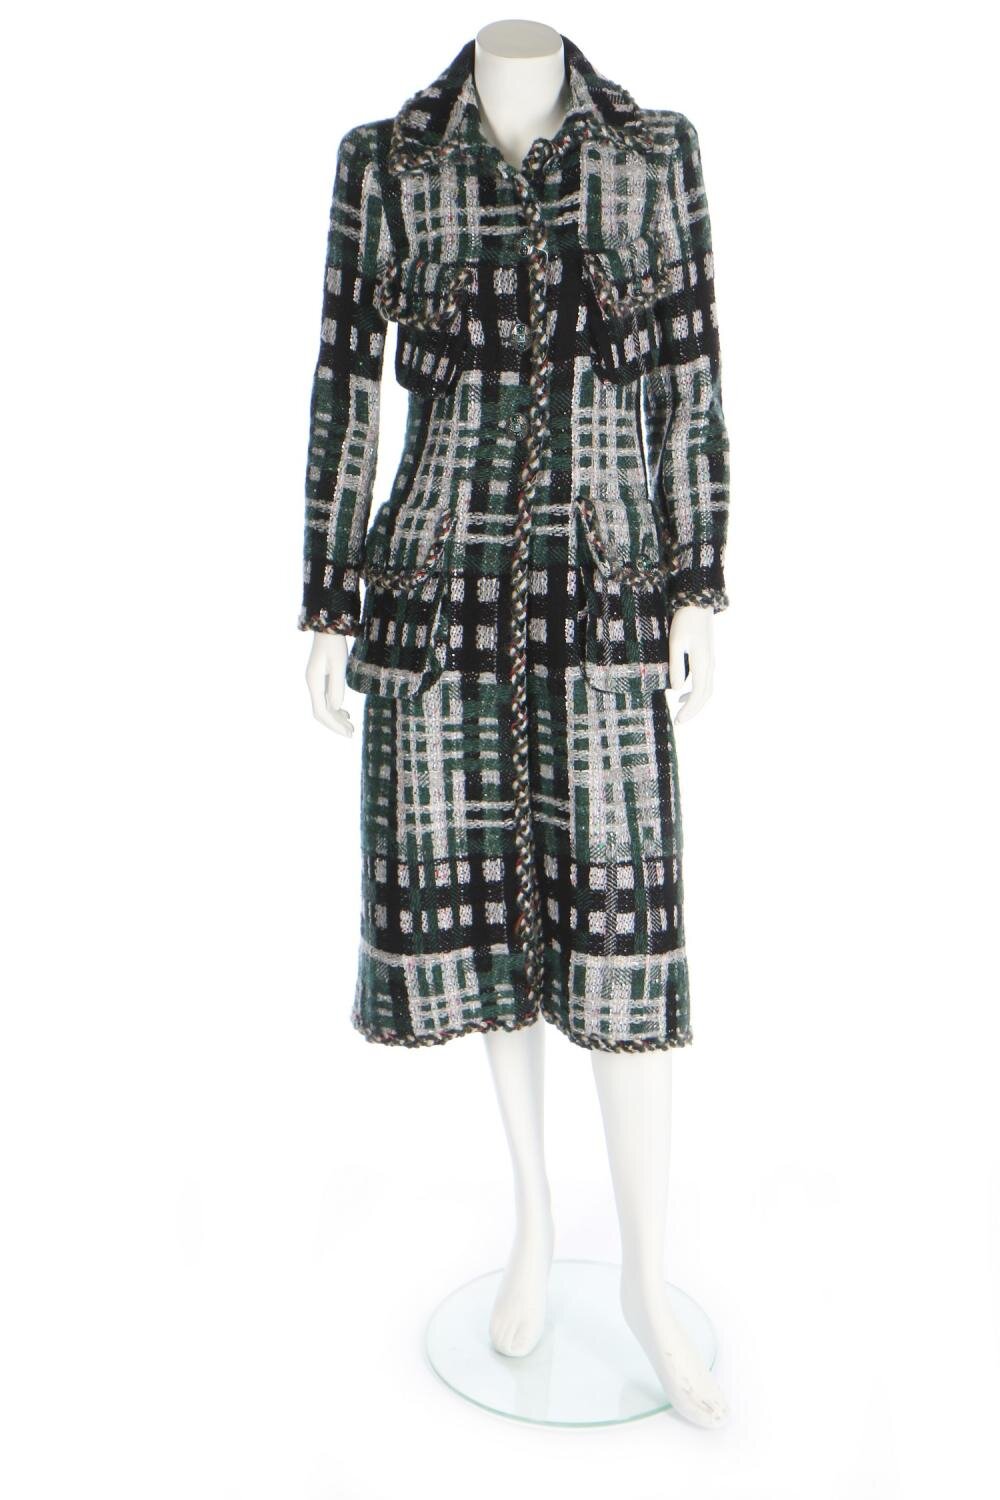 Chanel Long Check Wool Tweed Coat.jpg